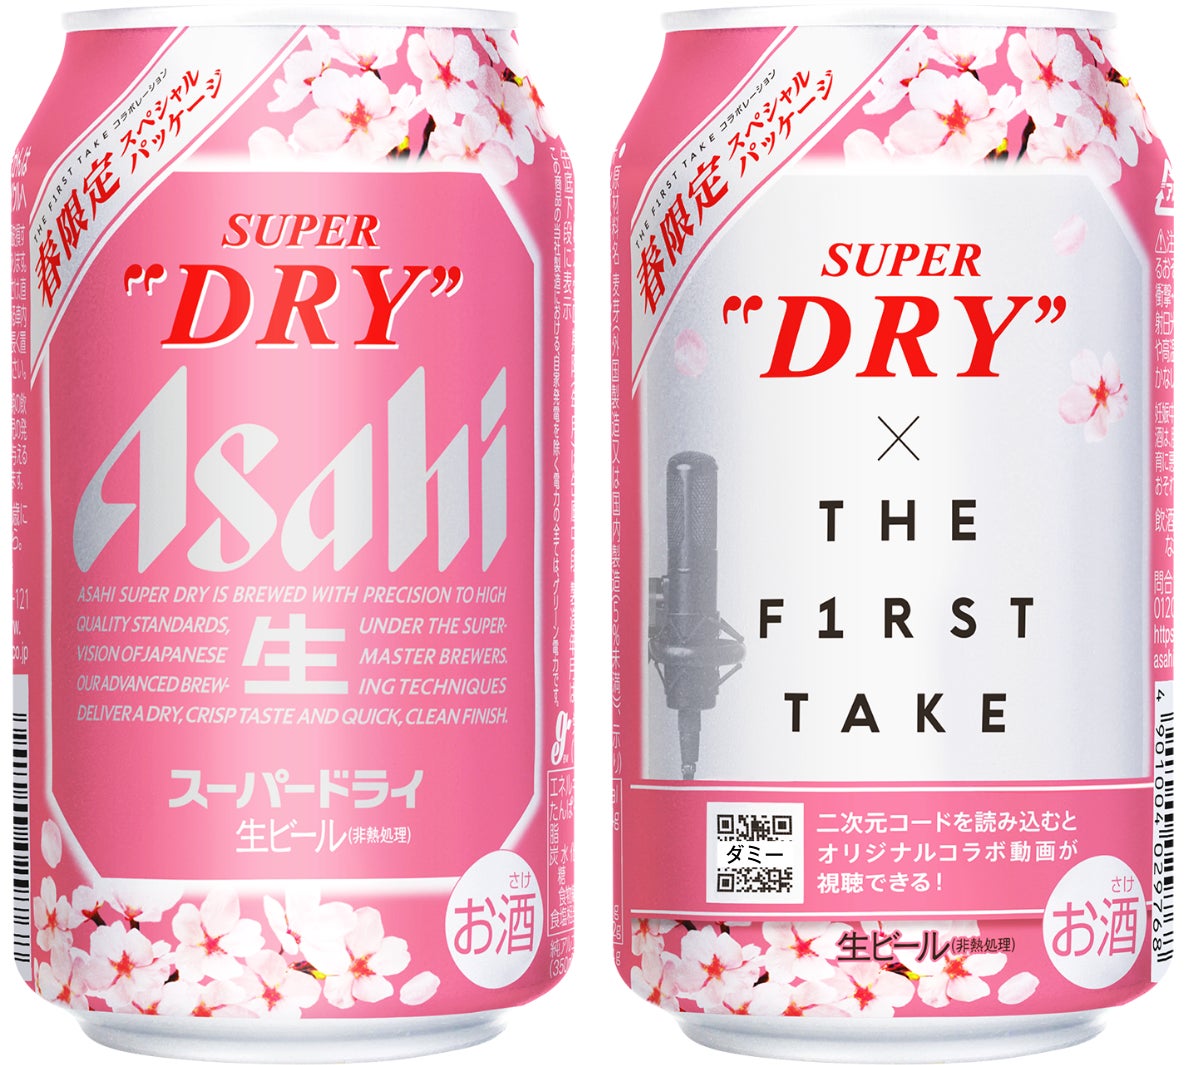 「スーパードライ」×「THE FIRST TAKE」春限定スペシャルパッケージ 1月31日から期間限定発売のサブ画像1